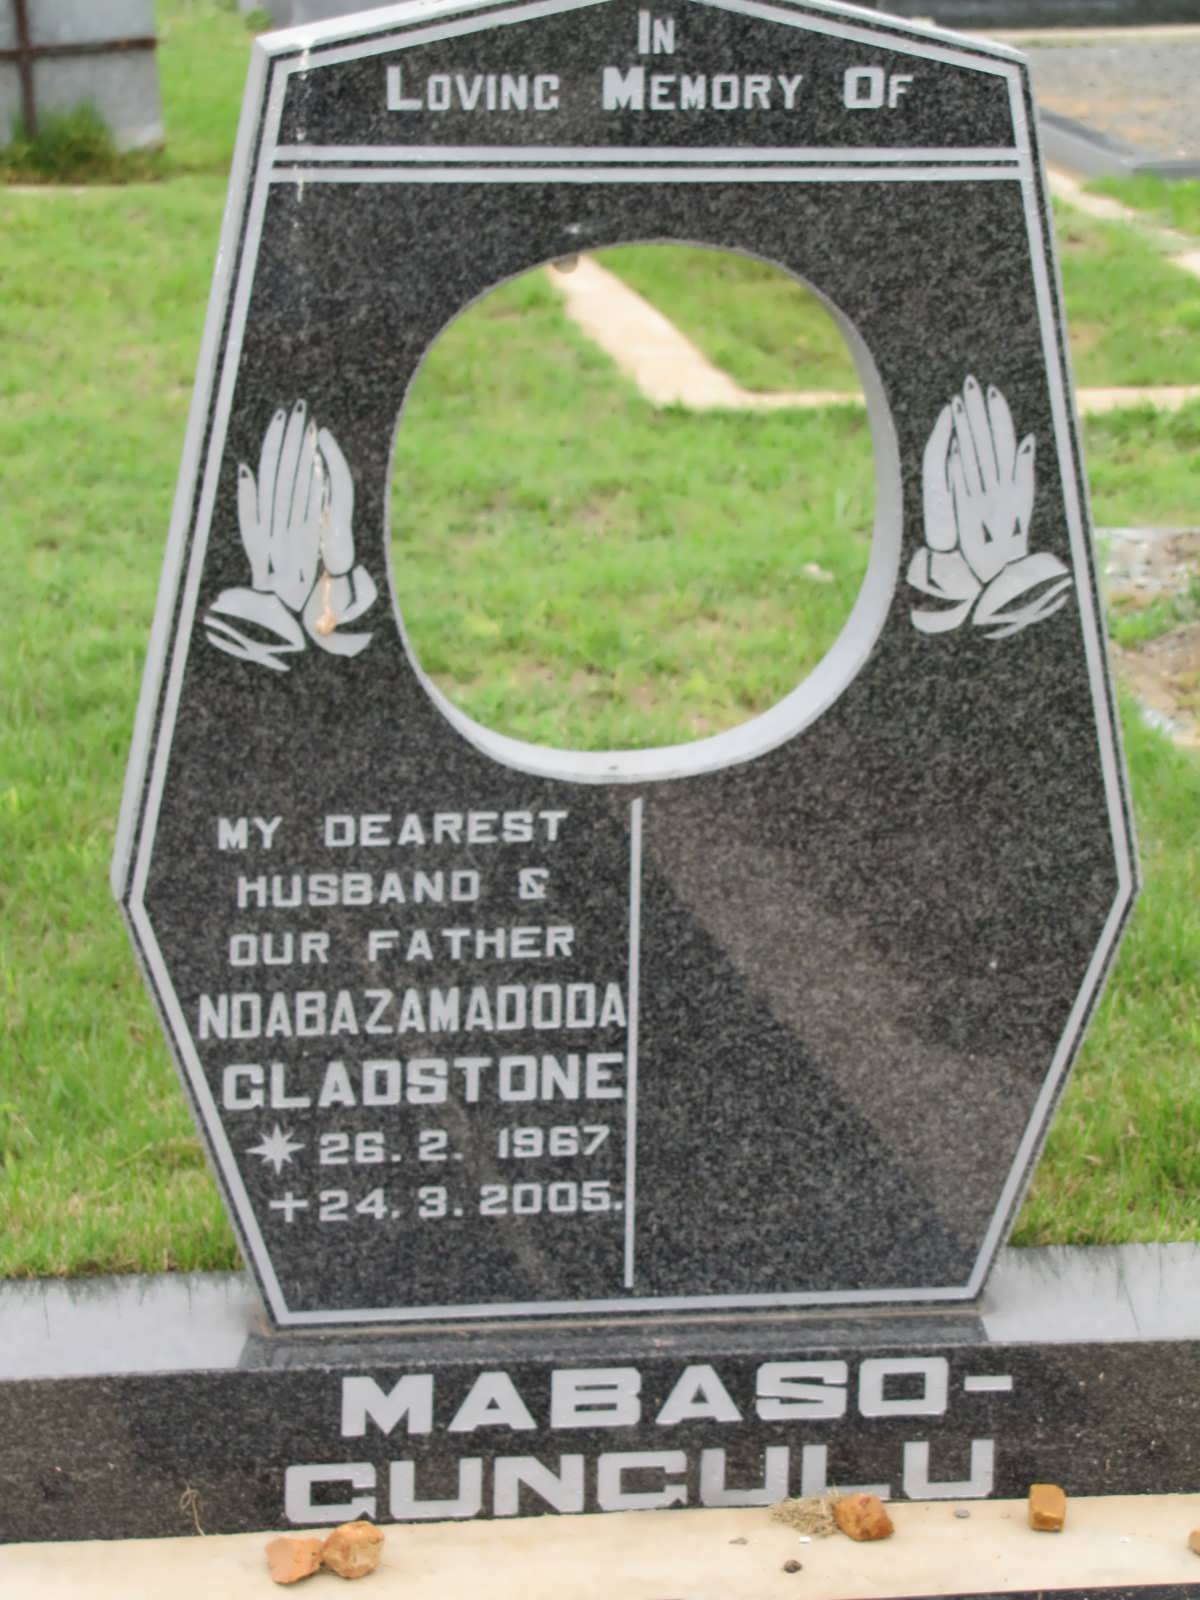 MABASO Ndabazamadoda Gladstone 1967-2005